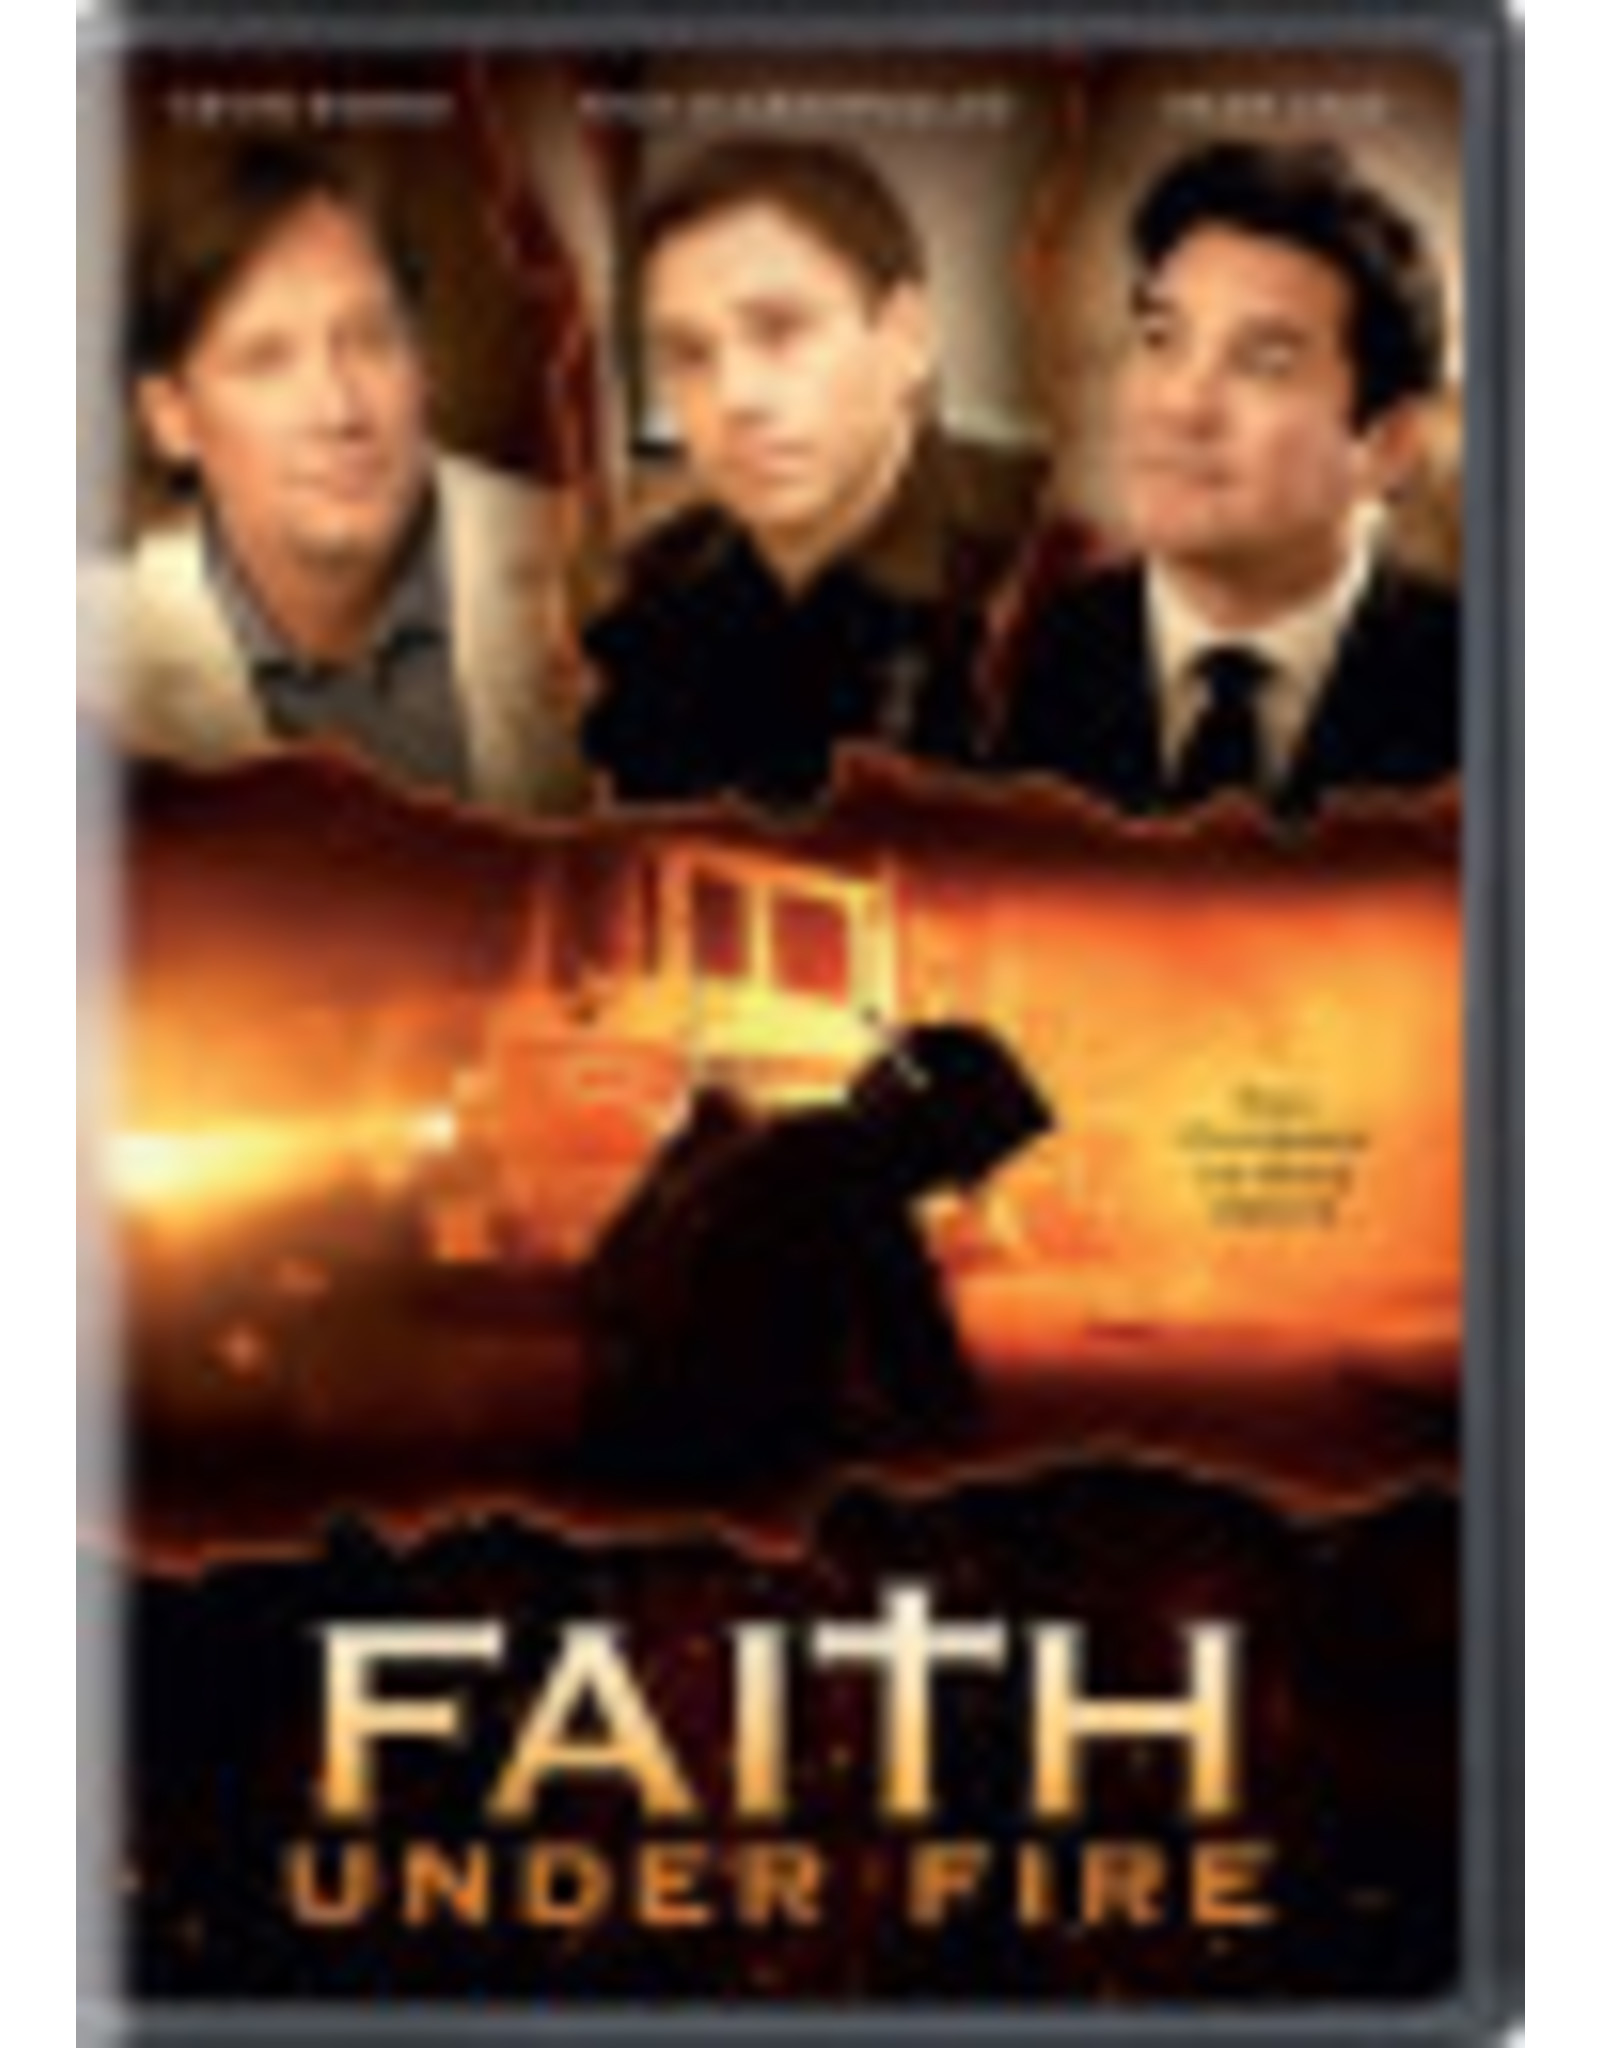 Faith Under Fire- DVD